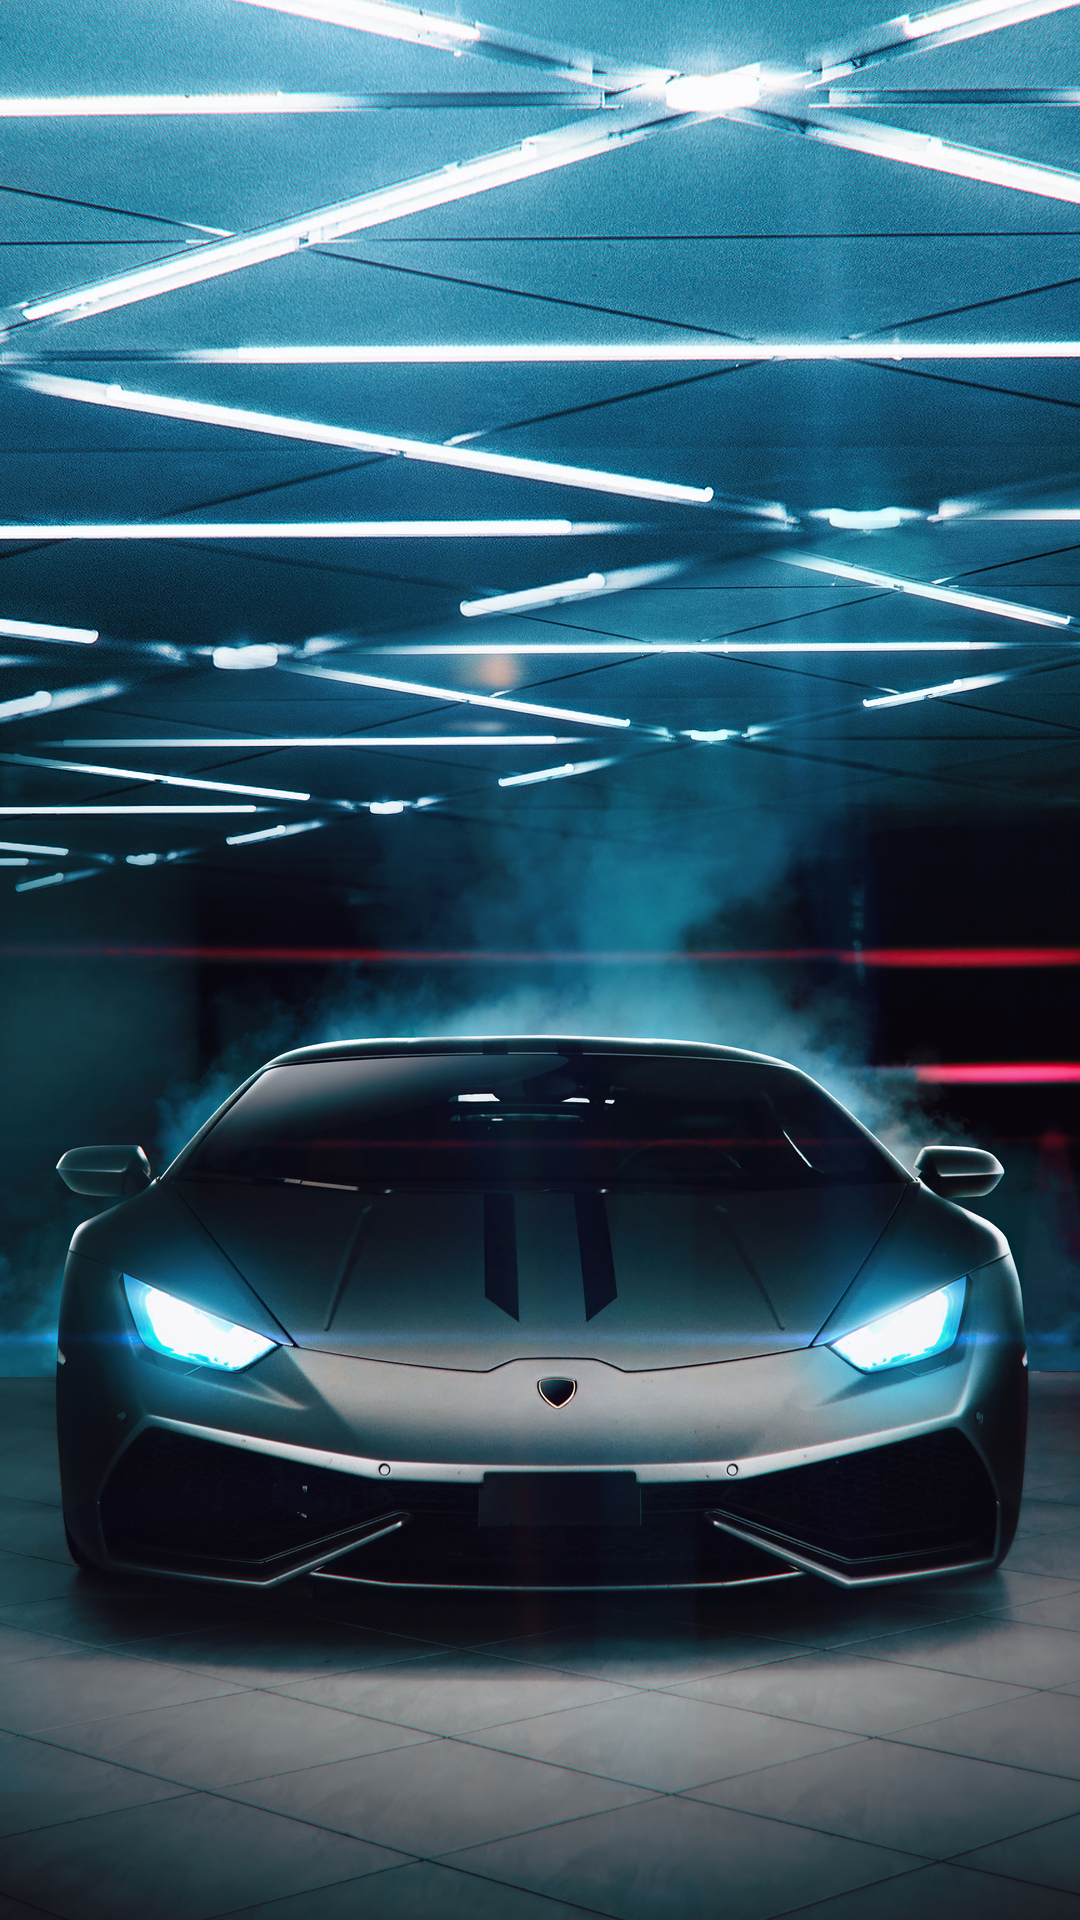 Hình nền Lamborghini được thiết kế đẹp mắt và sang trọng, với nhiều màu sắc và kiểu dáng khác nhau. Hãy chọn bức hình nền Lamborghini yêu thích của bạn và để tất cả trở nên nổi bật trên màn hình của mình. Hãy tự hào khi sử dụng hình nền Lamborghini đầy tinh tế như thế này.